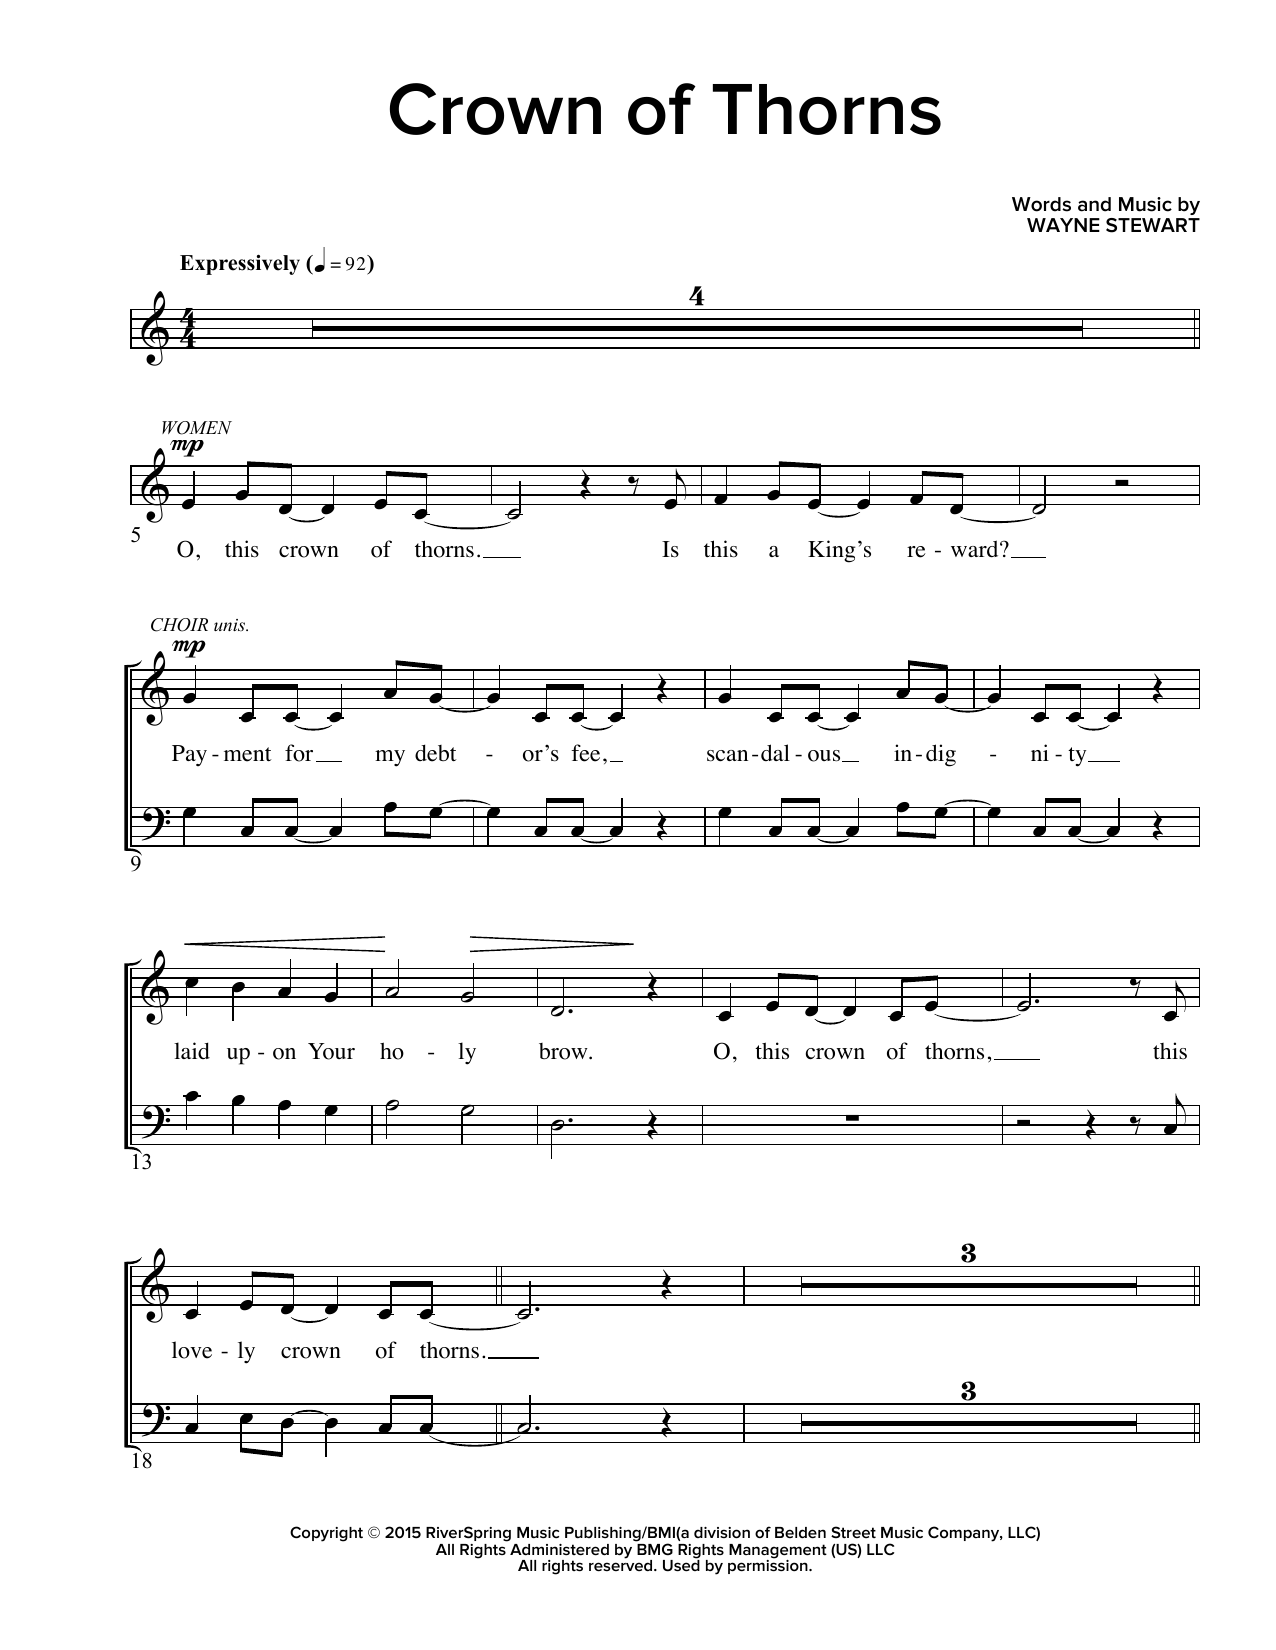 Wayne Stewart Crown Of Thorns Sheet Music Notes & Chords for Guitar Chords/Lyrics - Download or Print PDF